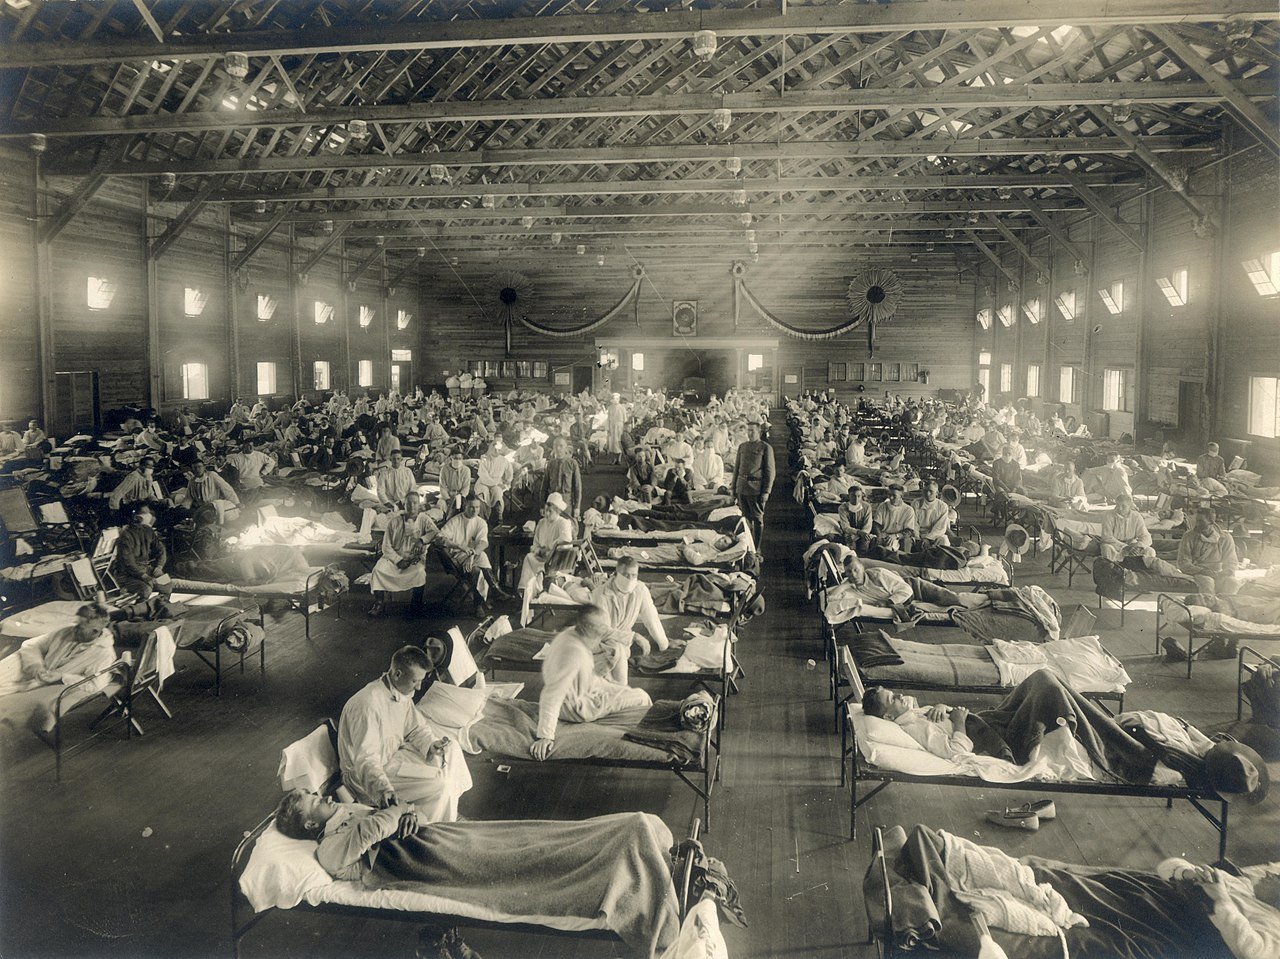 Σκελετοί από την πανδημία γρίπης του 1918 αποκαλύπτουν ποιοι ήταν πιο πιθανό να πεθάνουν